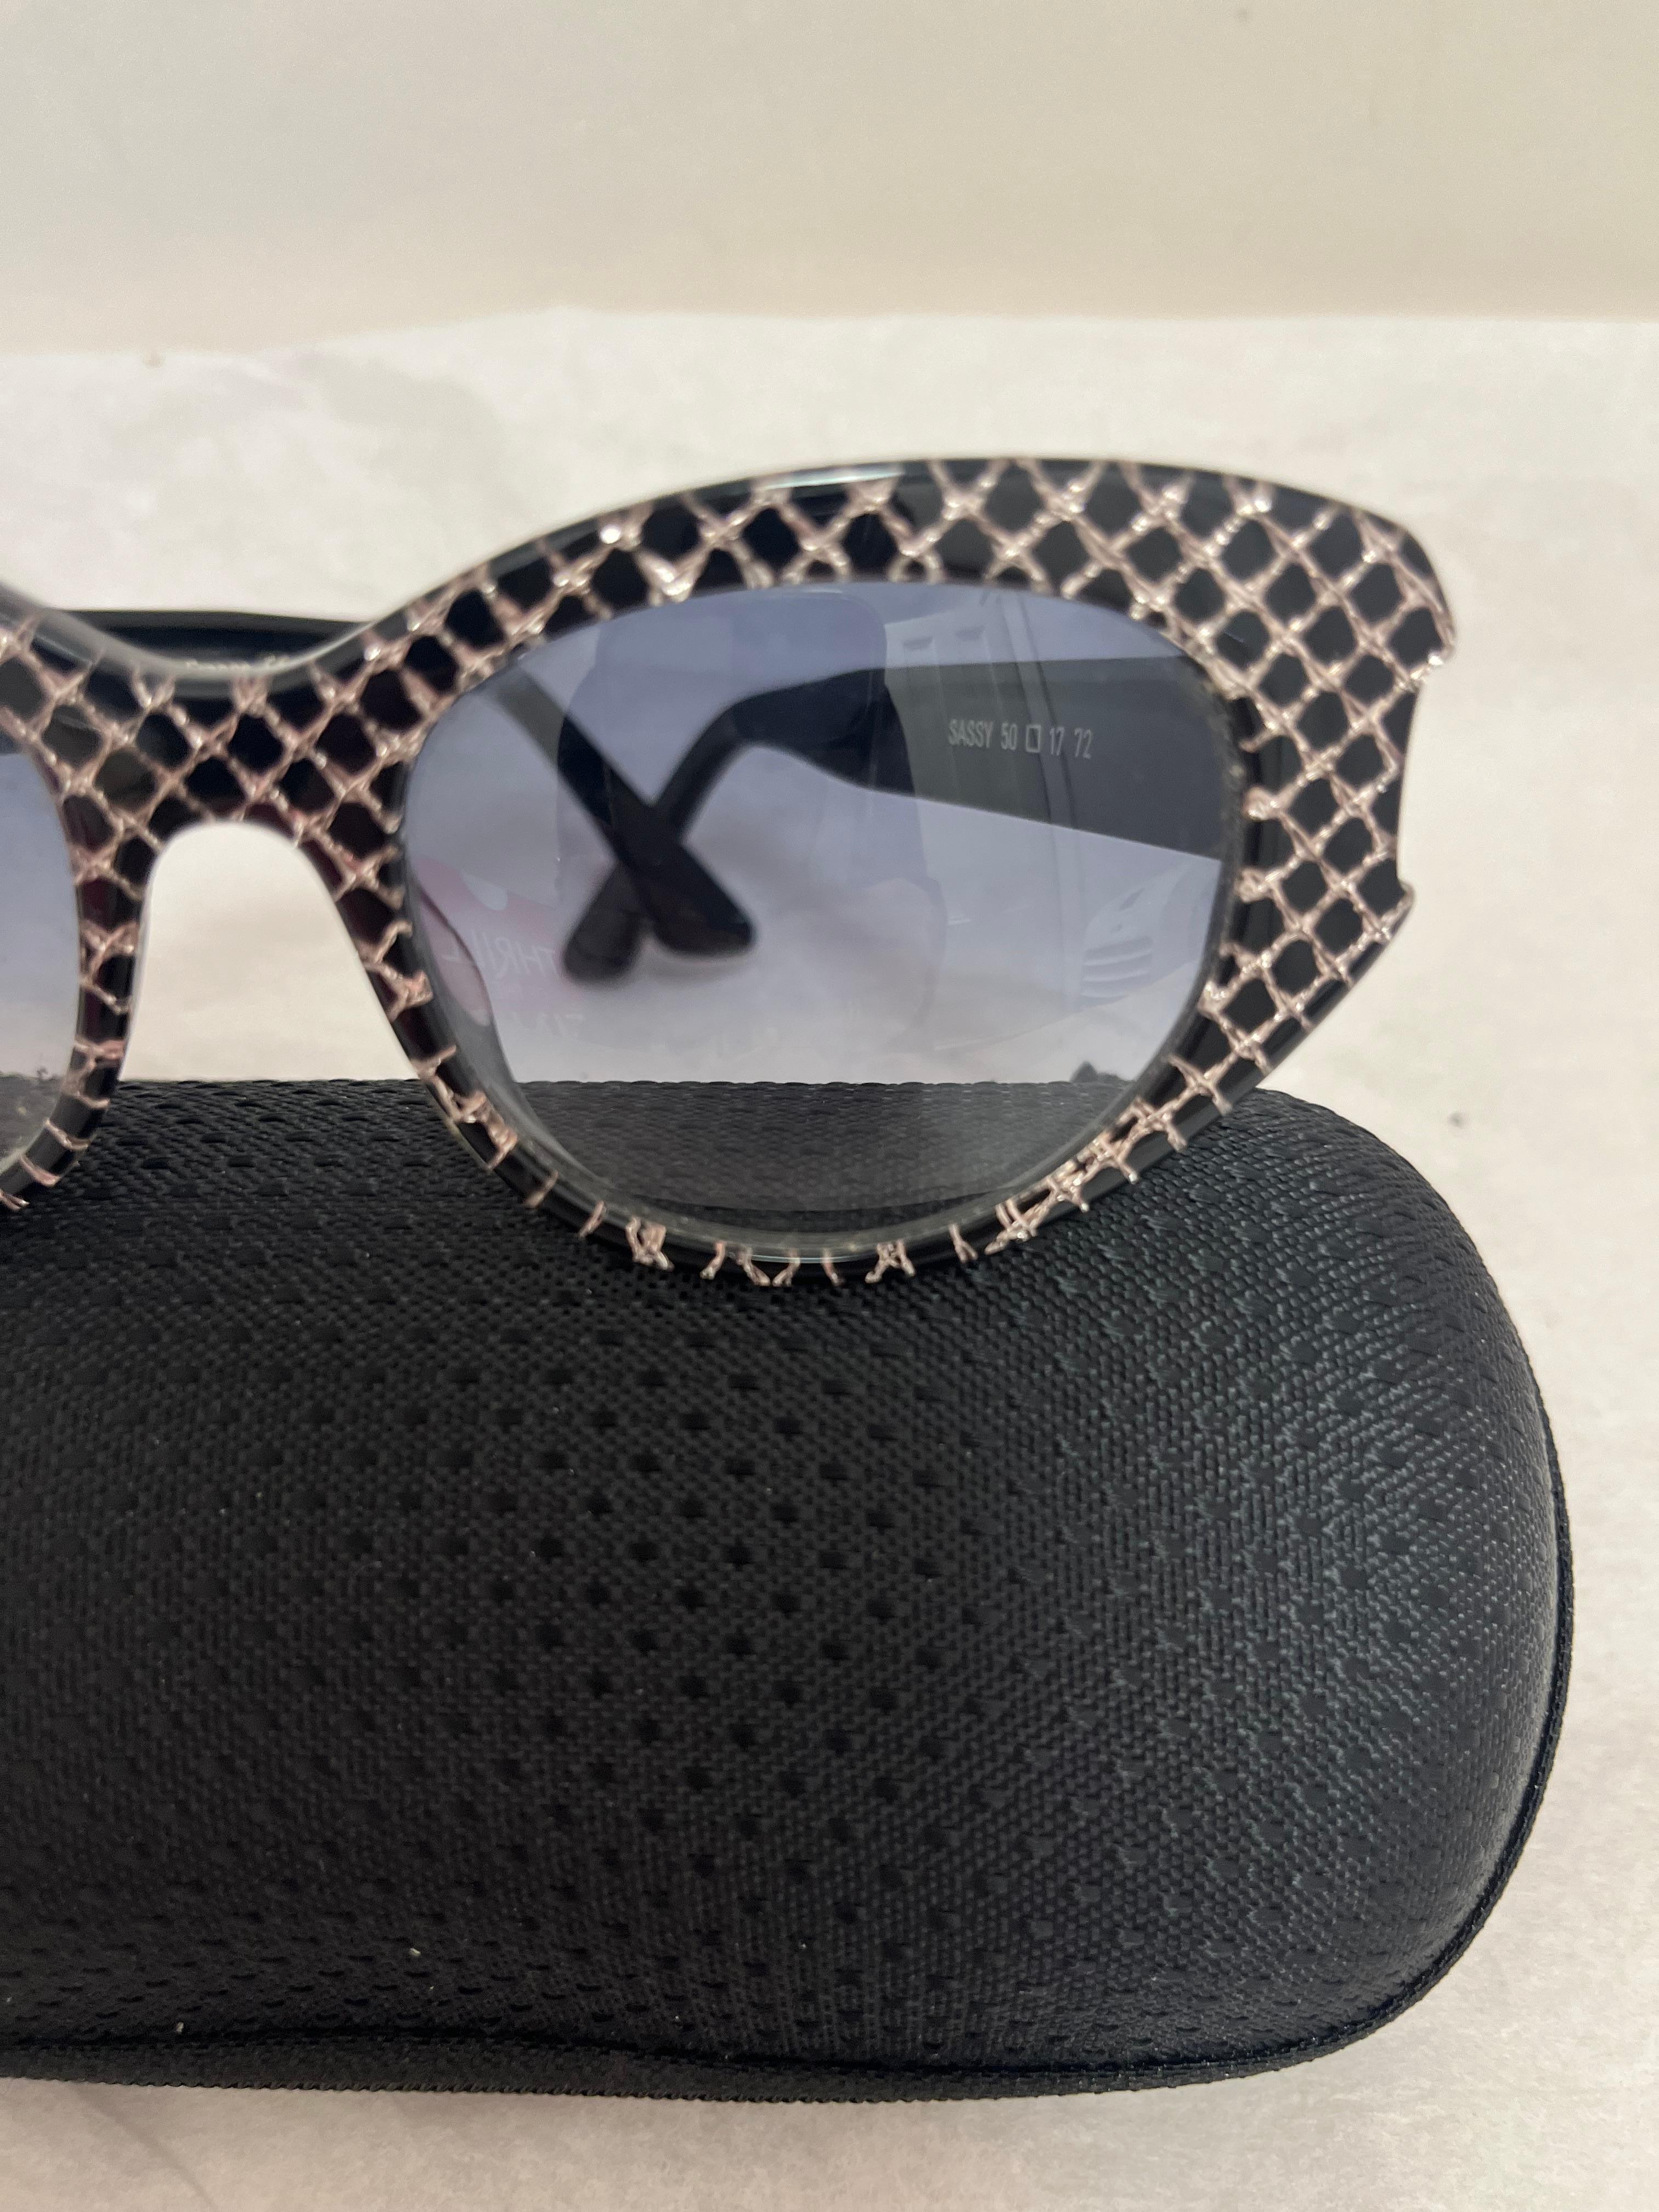 Es handelt sich um eine Vintage-Sonnenbrille von Thierry Lasry, handgefertigt in Frankreich. Diese Sonnenbrille ist in ungetragenem Zustand mit Verlaufsgläsern. 
Das Modell ist Sassy 50, und die Farbe ist schwarz mit einem rautenförmigen Muster.